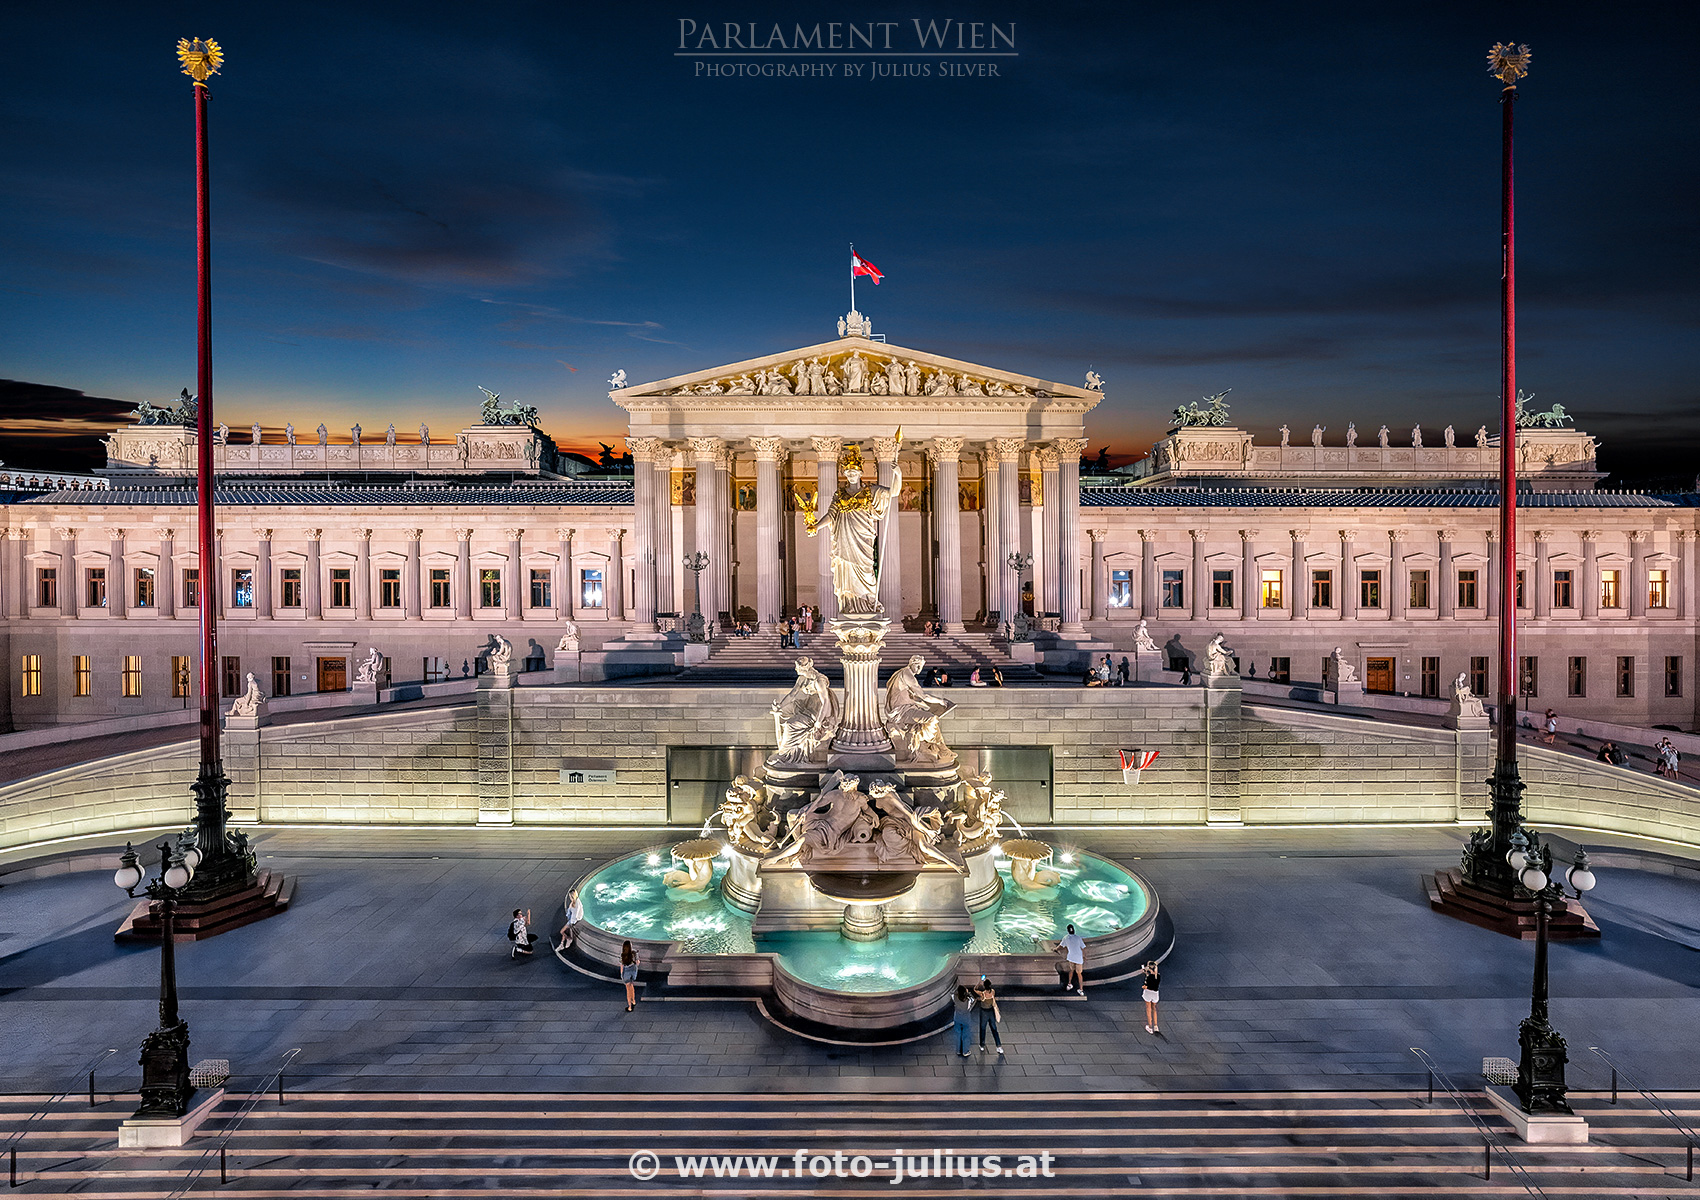 W7443a_Parlament_Wien.jpg, 939kB